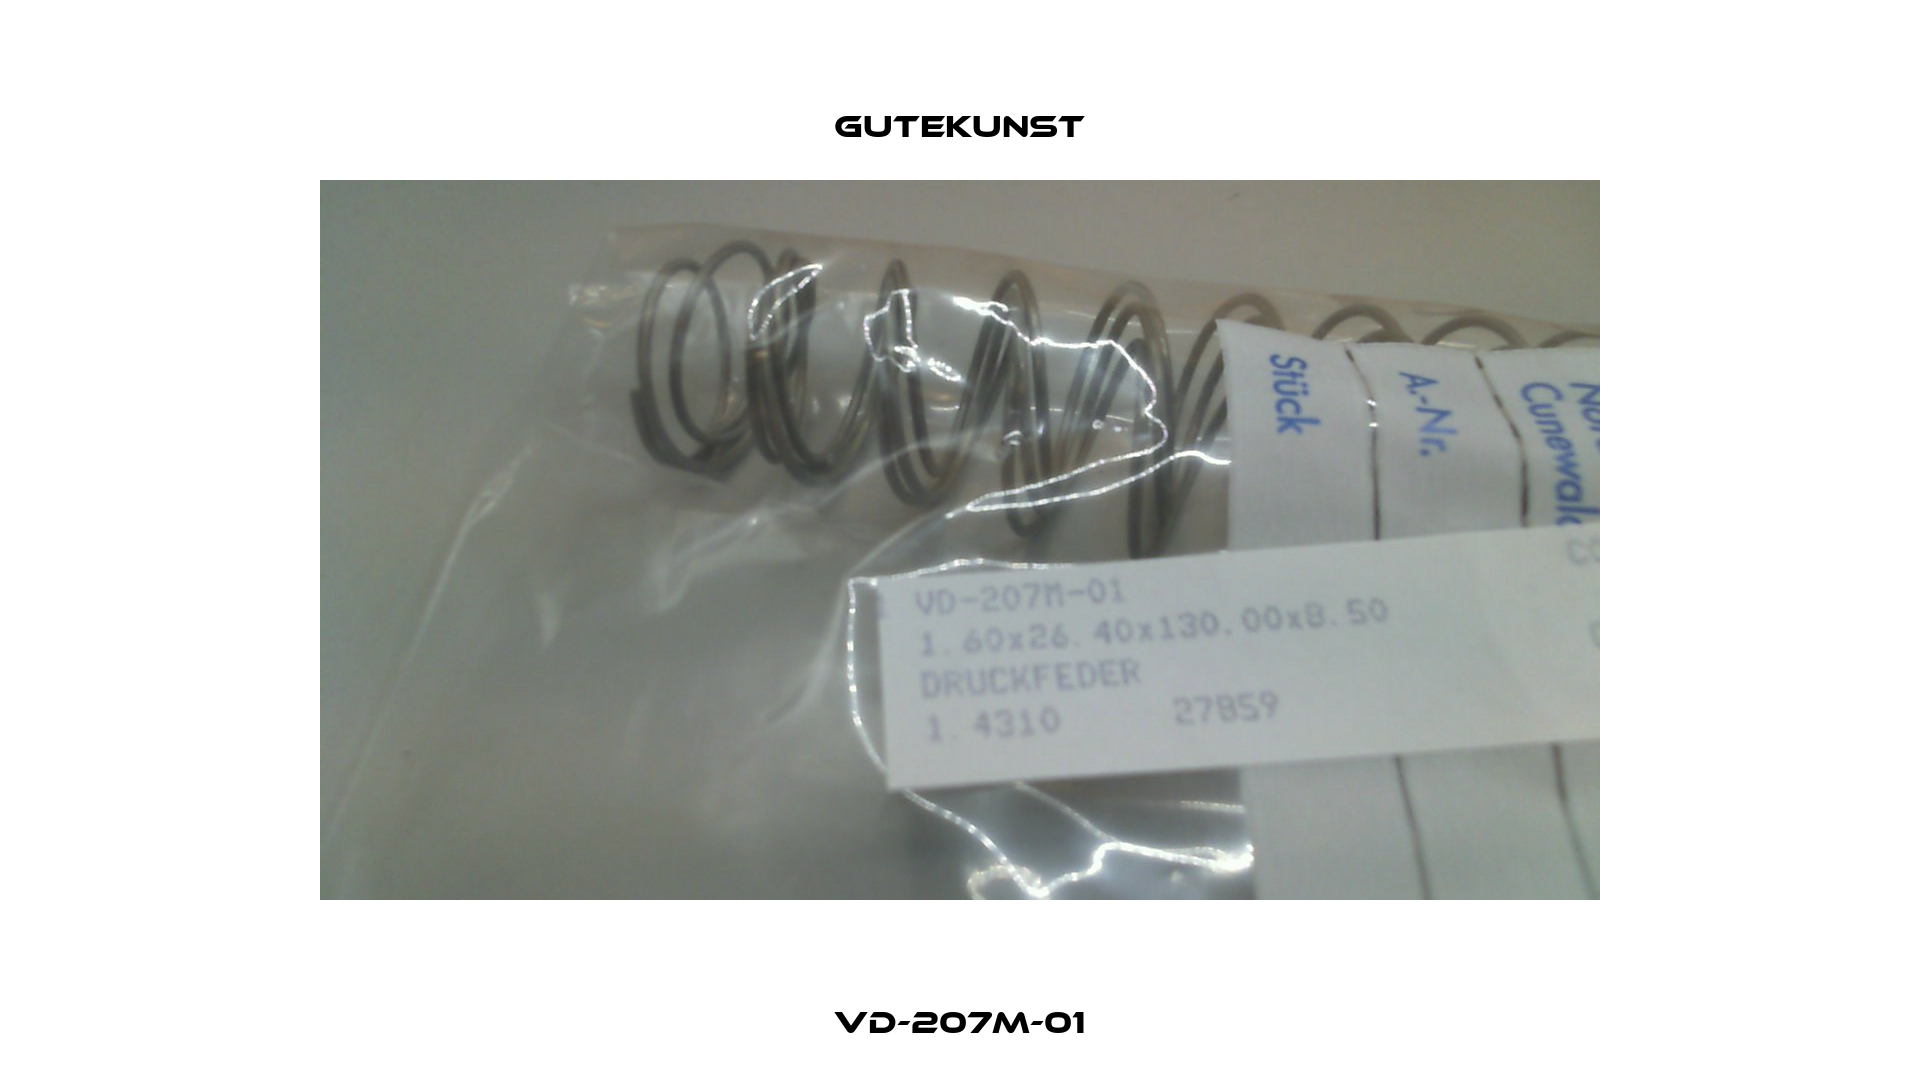 VD-207M-01 Gutekunst